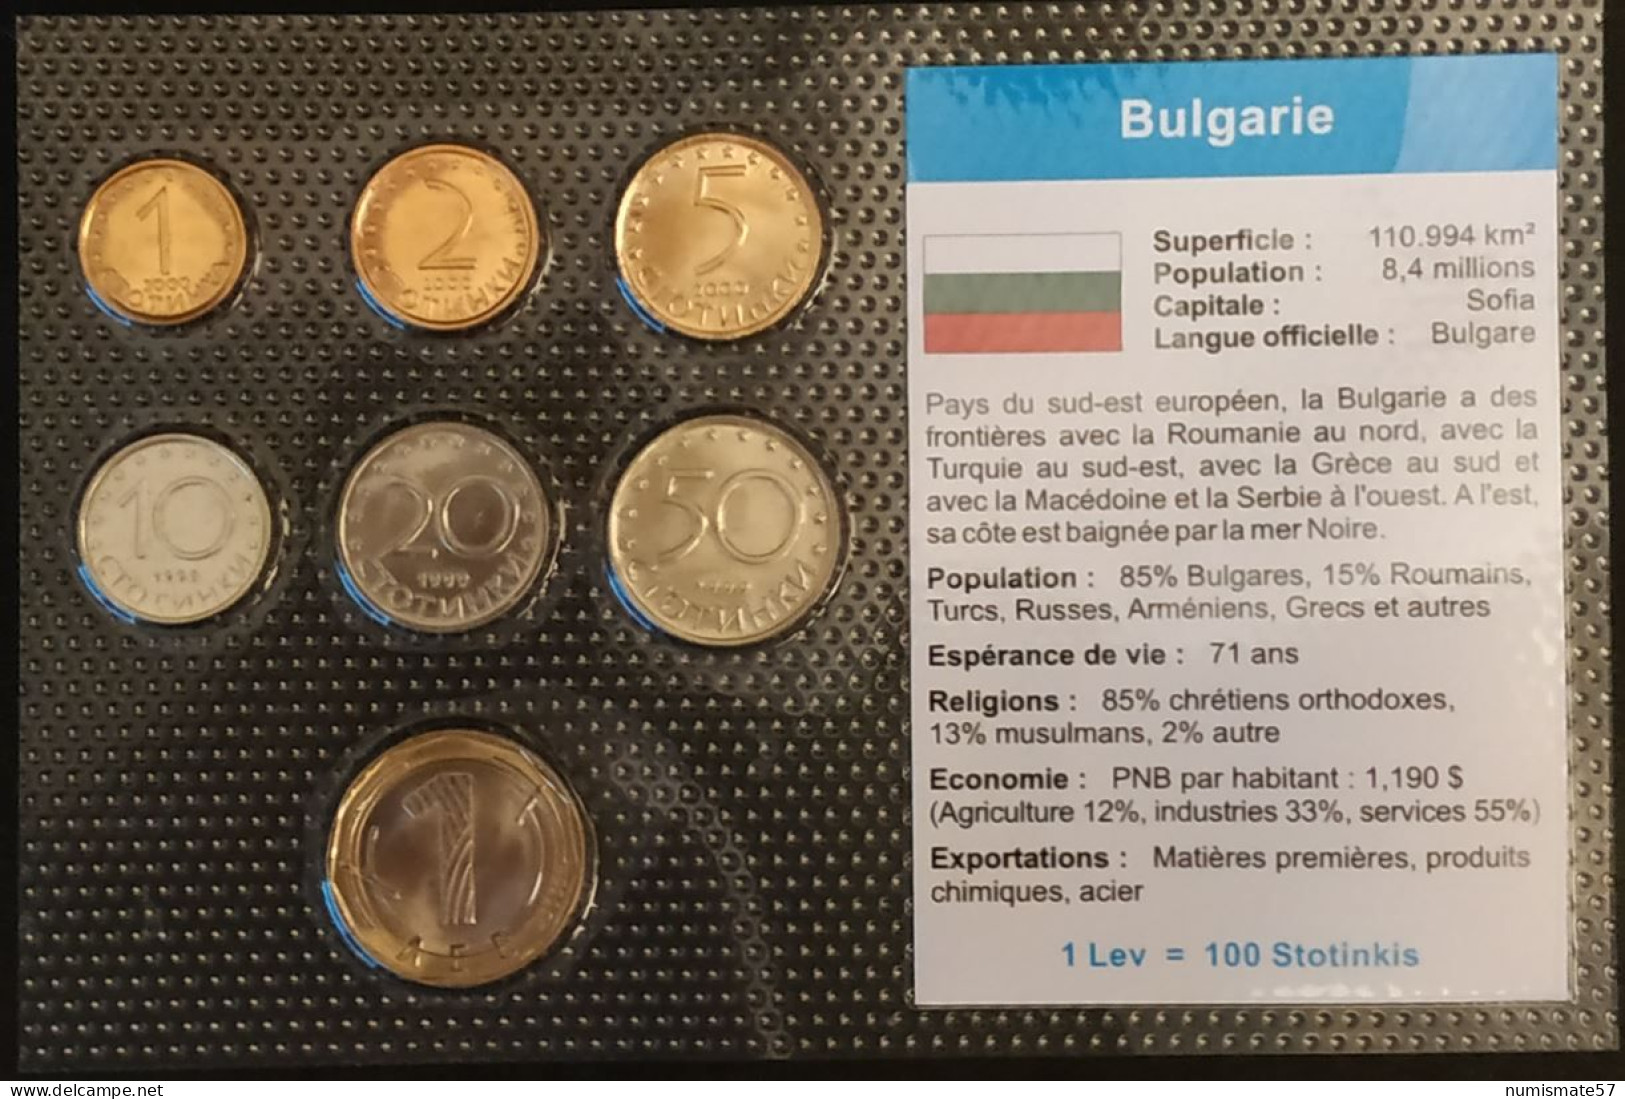 BULGARIE - BULGARIA - SERIE DE 7 PIECES DIFFERENTES - 1 - 2 - 5 - 10 - 20 - 50 STOTINKA - STOTINKI - 1 LEV - Bulgarie